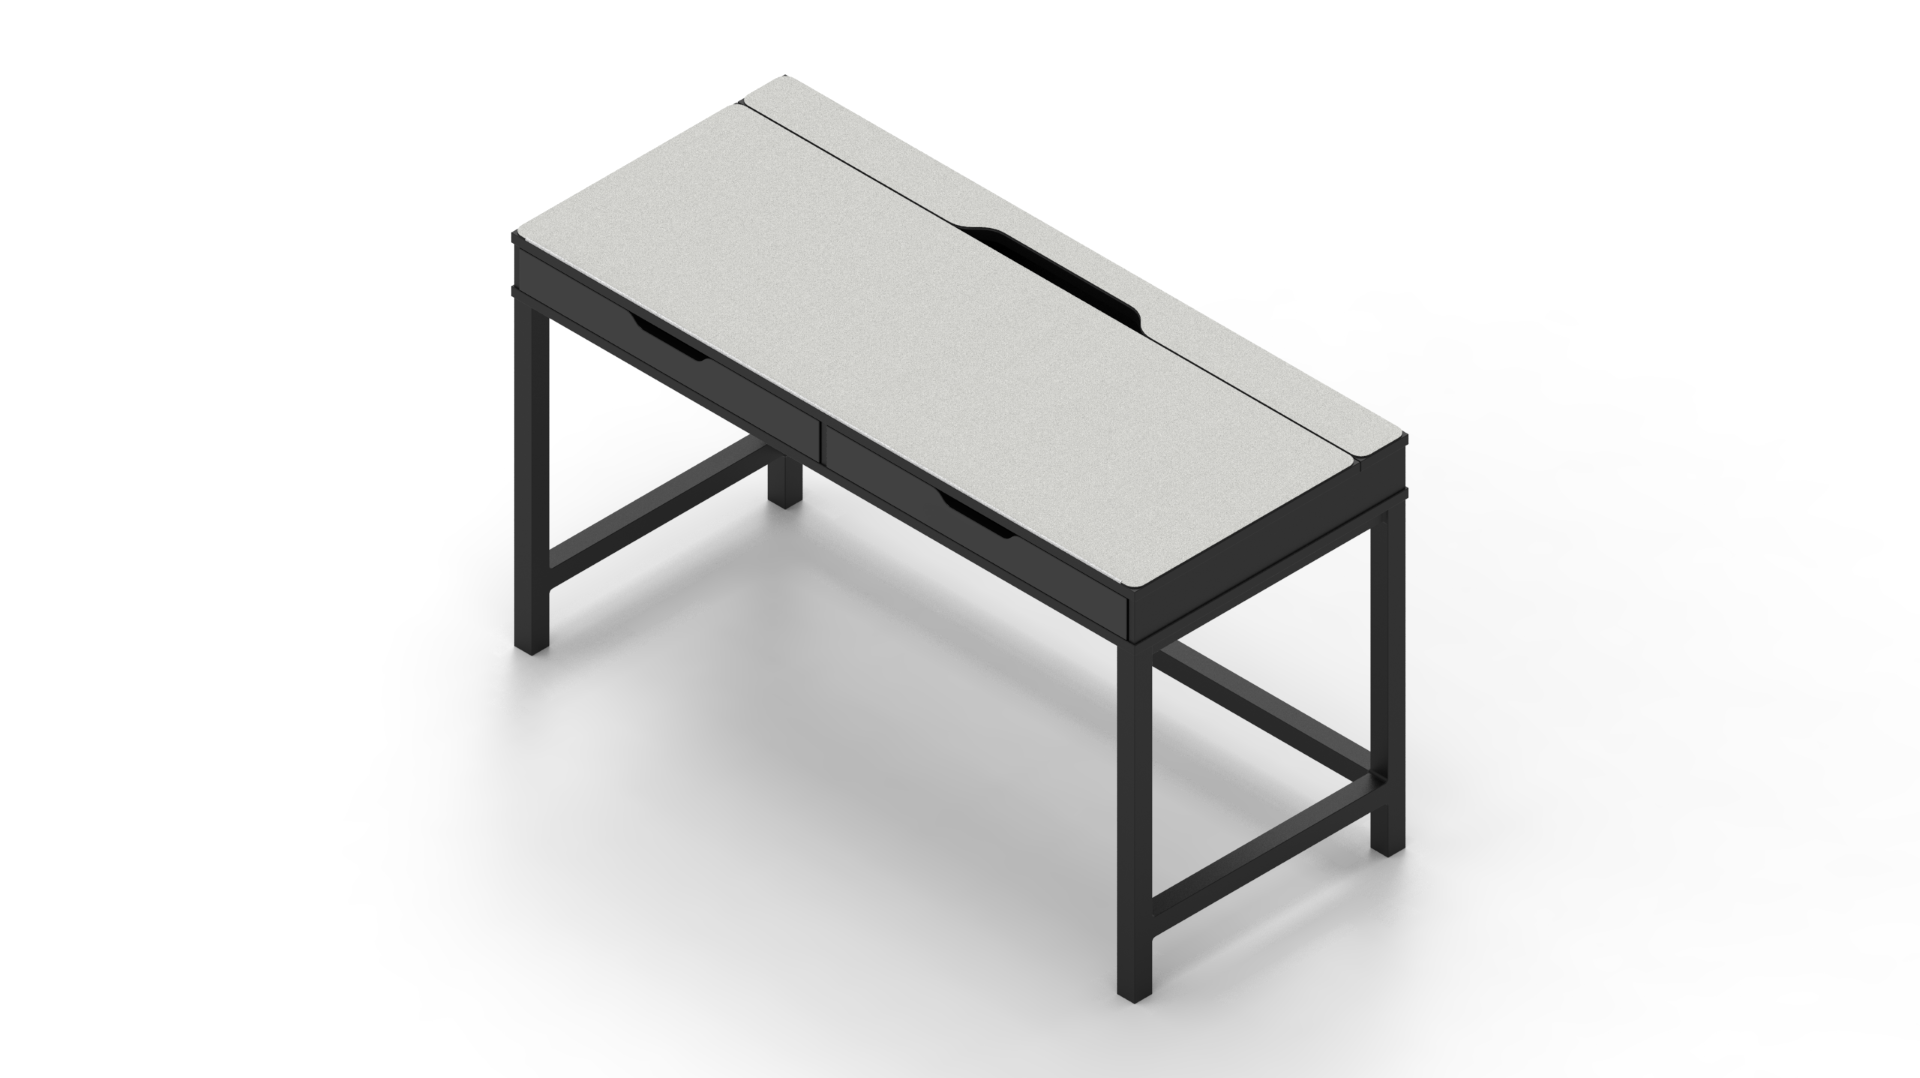 MK White IKEA ALEX Desk Mat (52" / 132 cm) Full-desk Mouse Pad MK9NGLRW91 |40171|